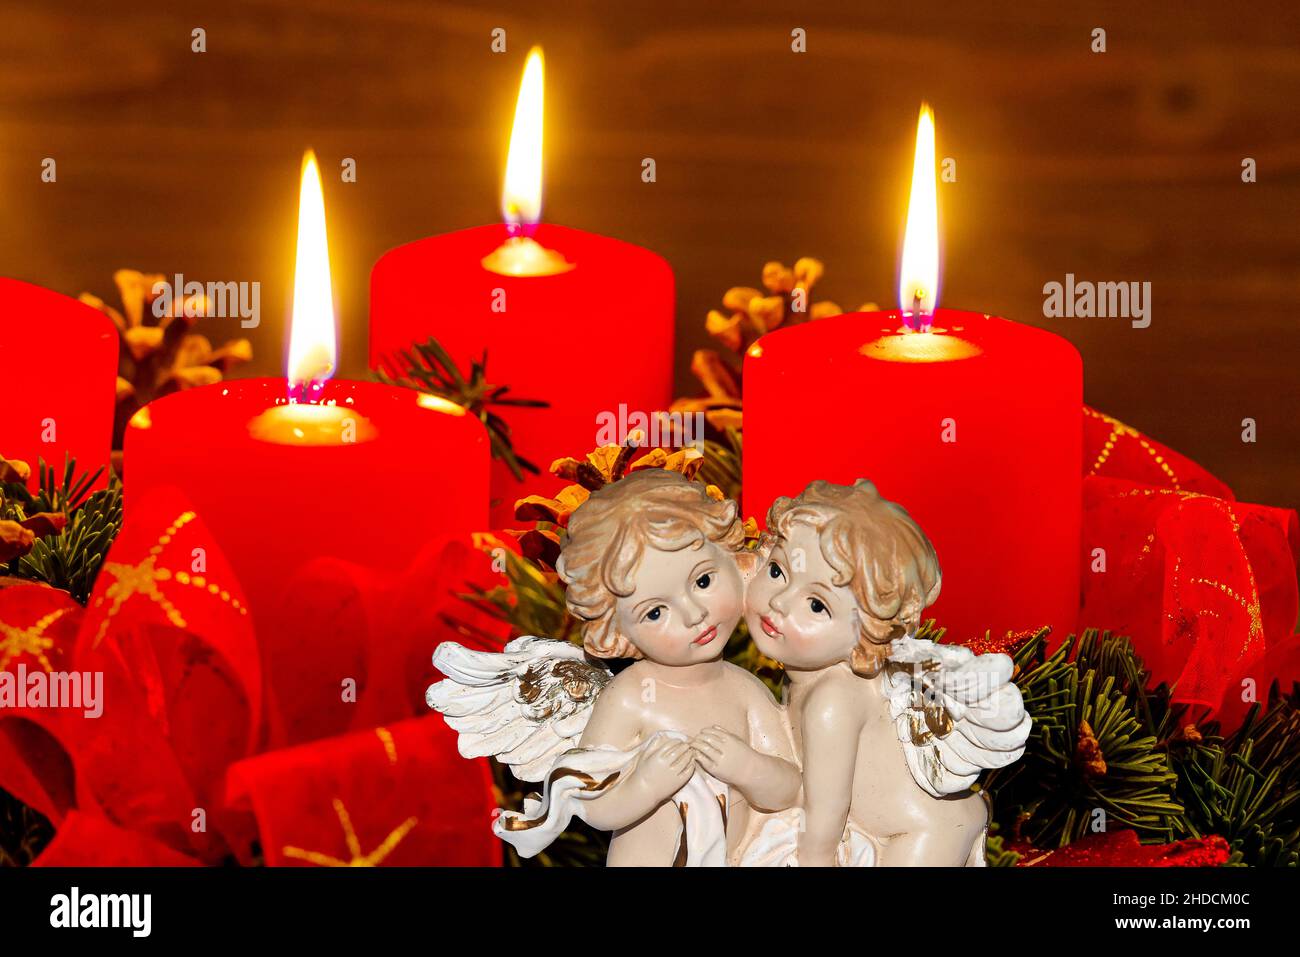 Ein Adventskranz zu Weihnachten sorgt für romatinsche Stimmung in der stillen Advent Zeit. 3 brennende Kerzen, 3. Advent, Zwei Engel, weihnachtsengel, Stock Photo